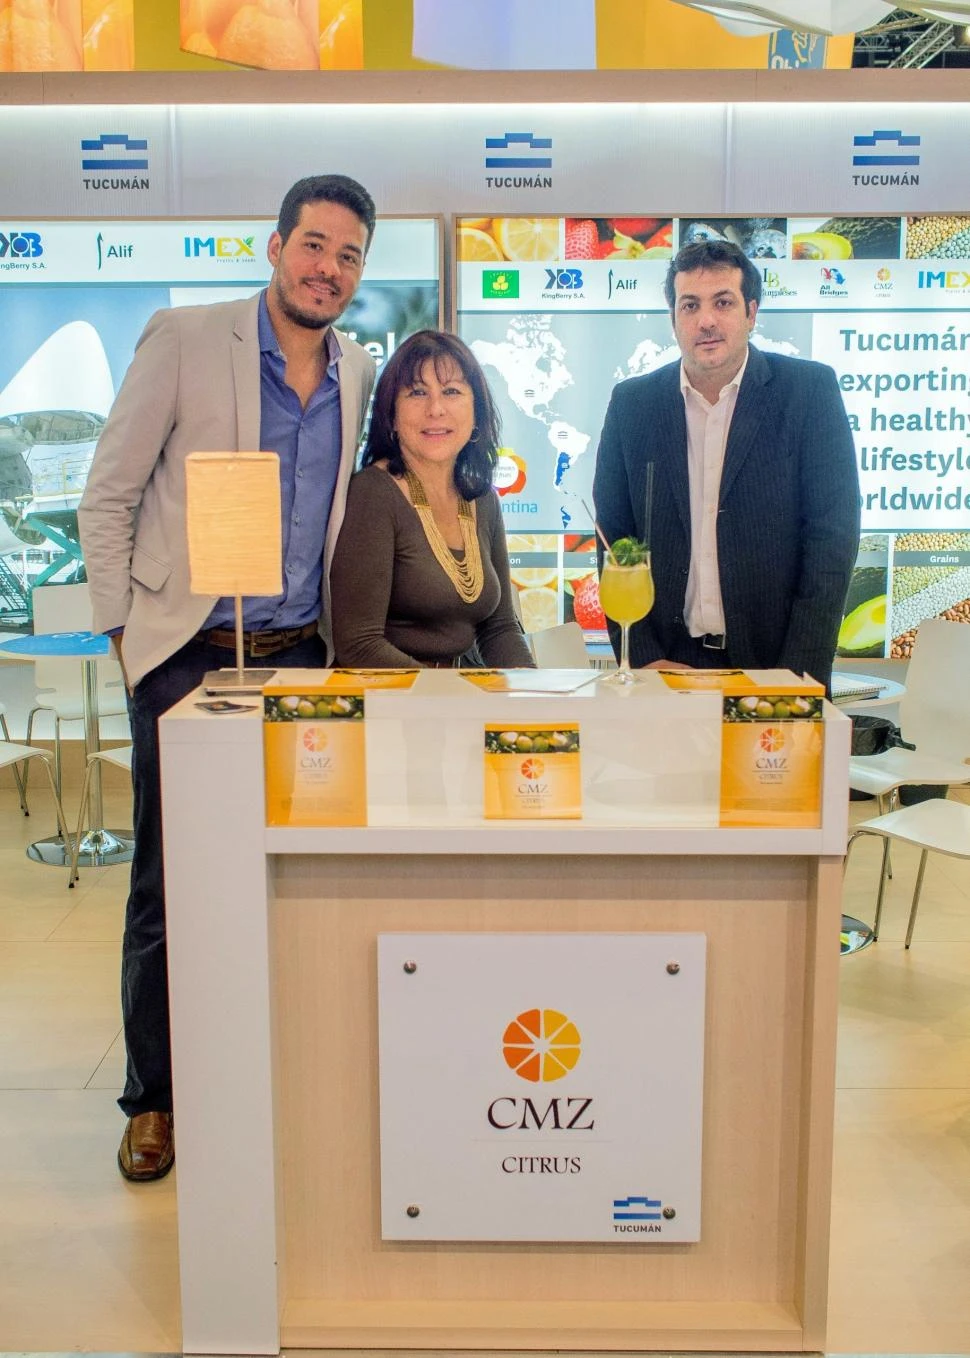 IMPORTANCIA. “Para CMZ Citrus es un motivo de orgullo haber llegado a un mercado con altos estándares como el europeo”, celebró Gonzalo Díaz Lozano.